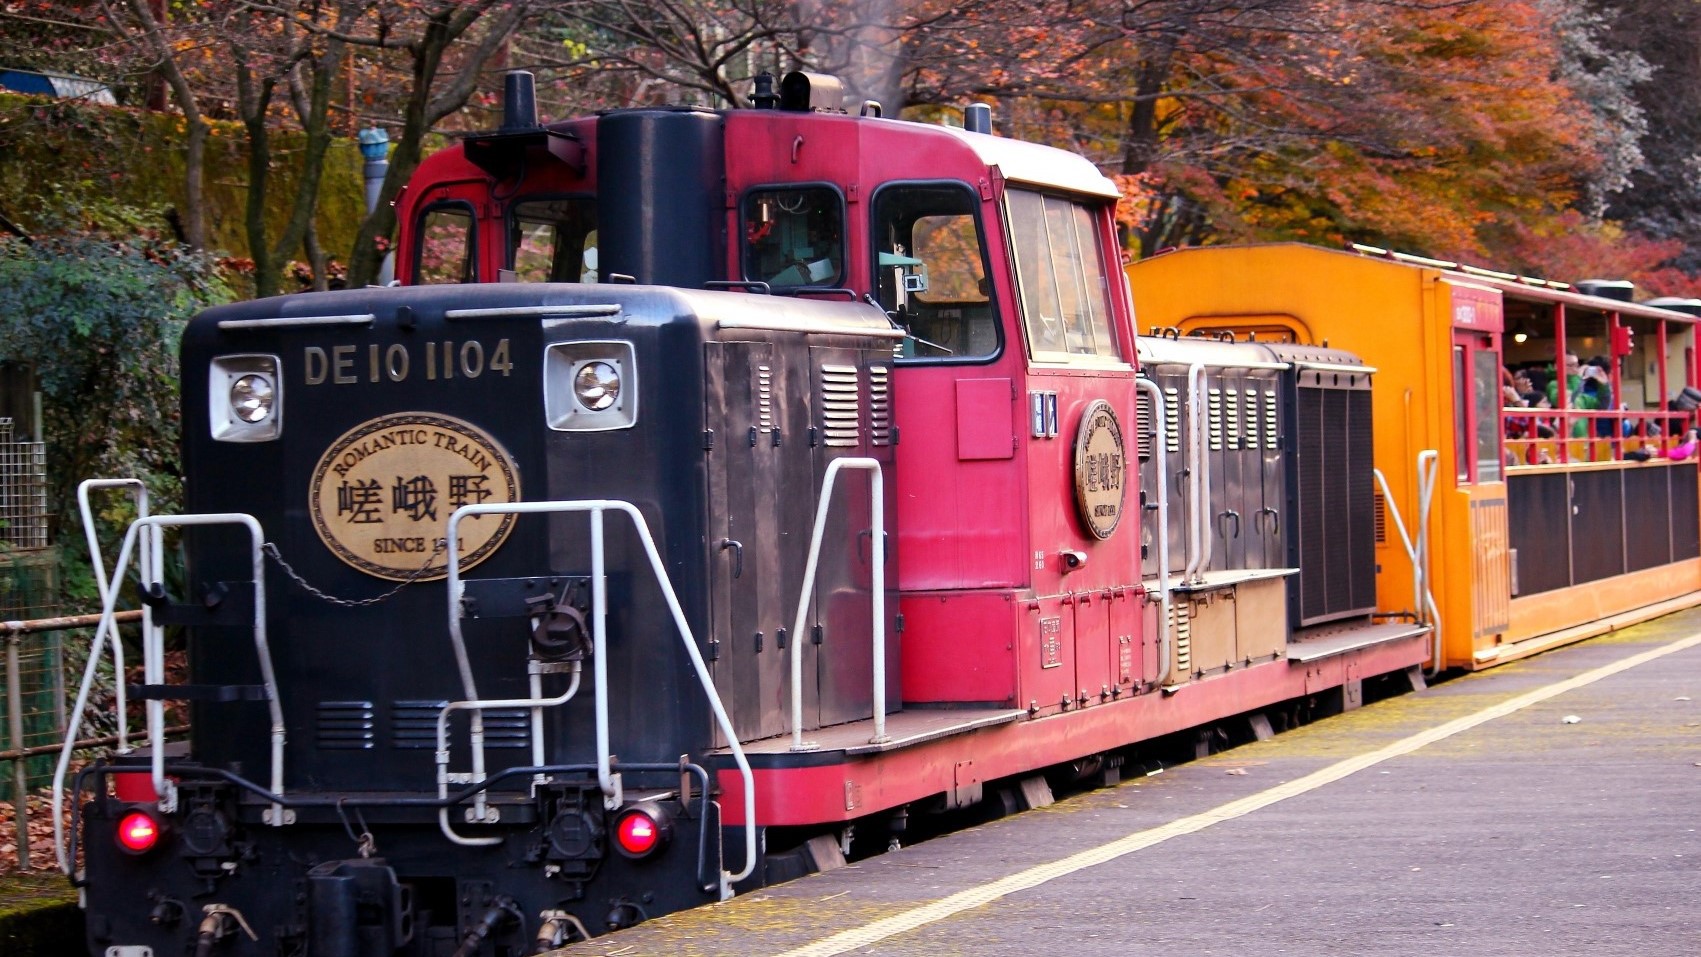 嵯峨野トロッコ列車新緑や紅葉など嵯峨野の四季折々の風情を楽めます。